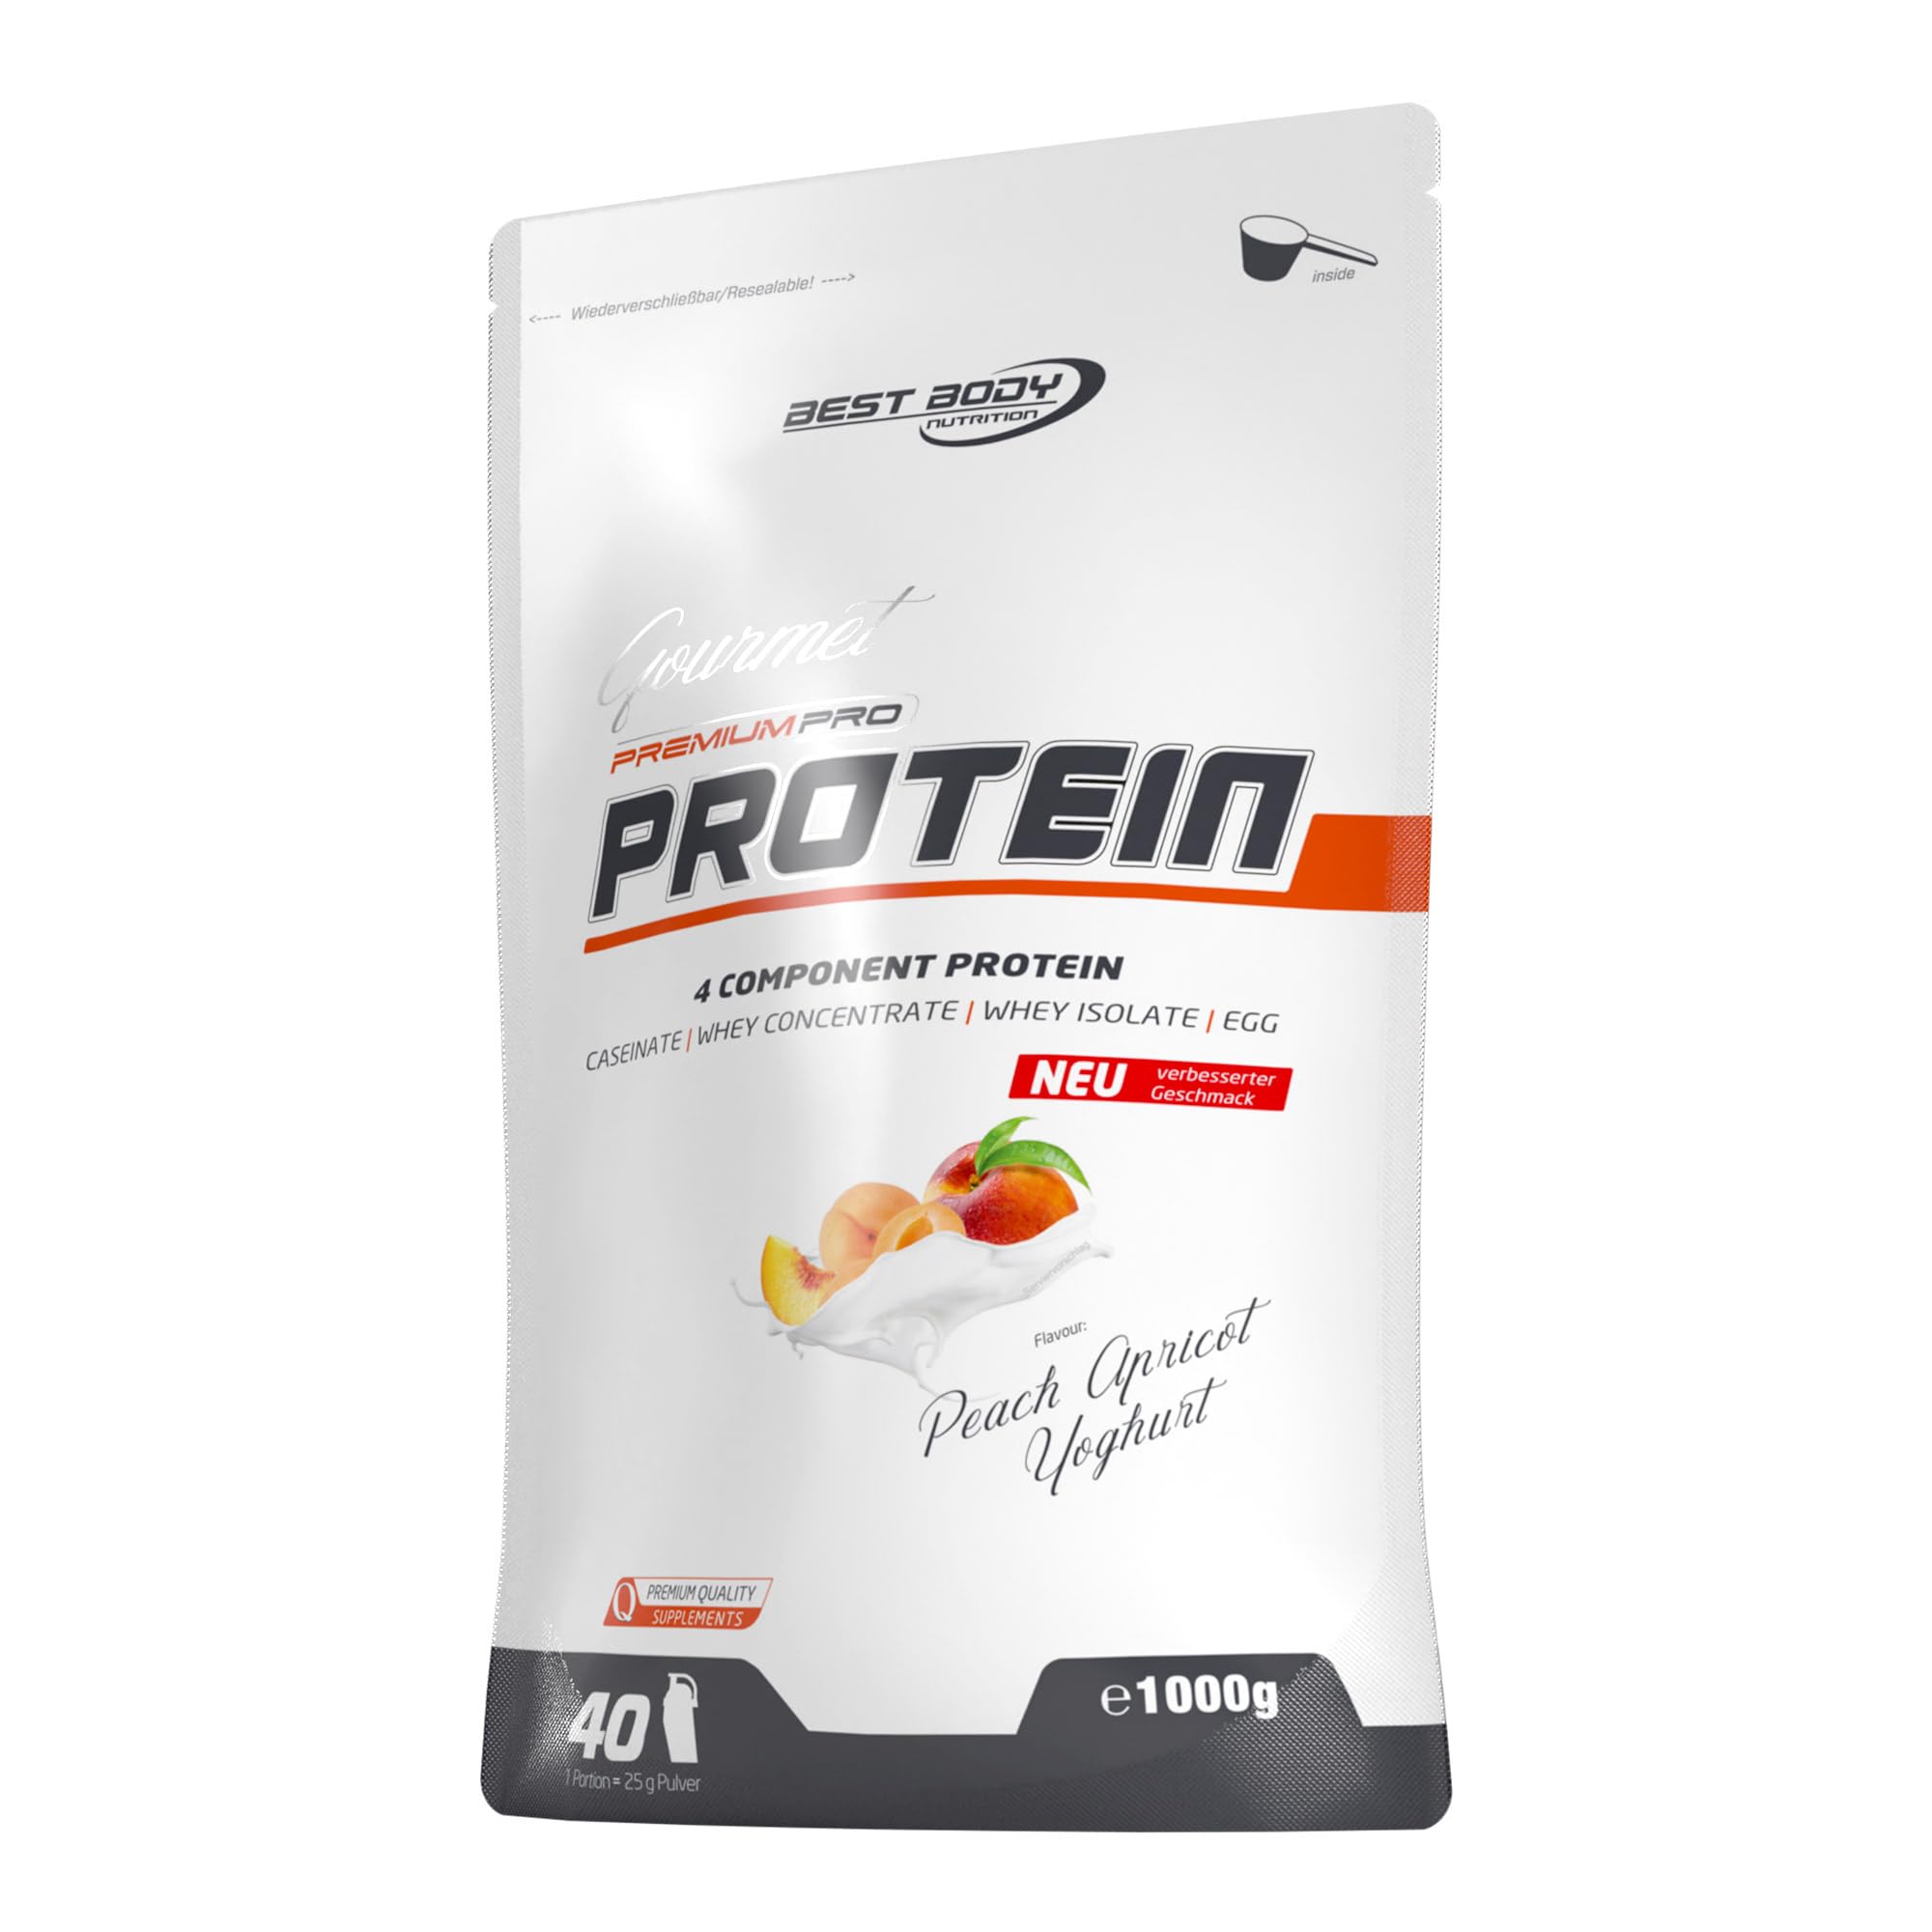 Best Body Nutrition Gourmet Premium Pro Protein, Peach Apricot Yoghurt, 4 Komponenten Protein Shake: Caseinat, Whey Konzentrat, Whey Isolat, Eiprotein, 1 kg Zipp Beutel